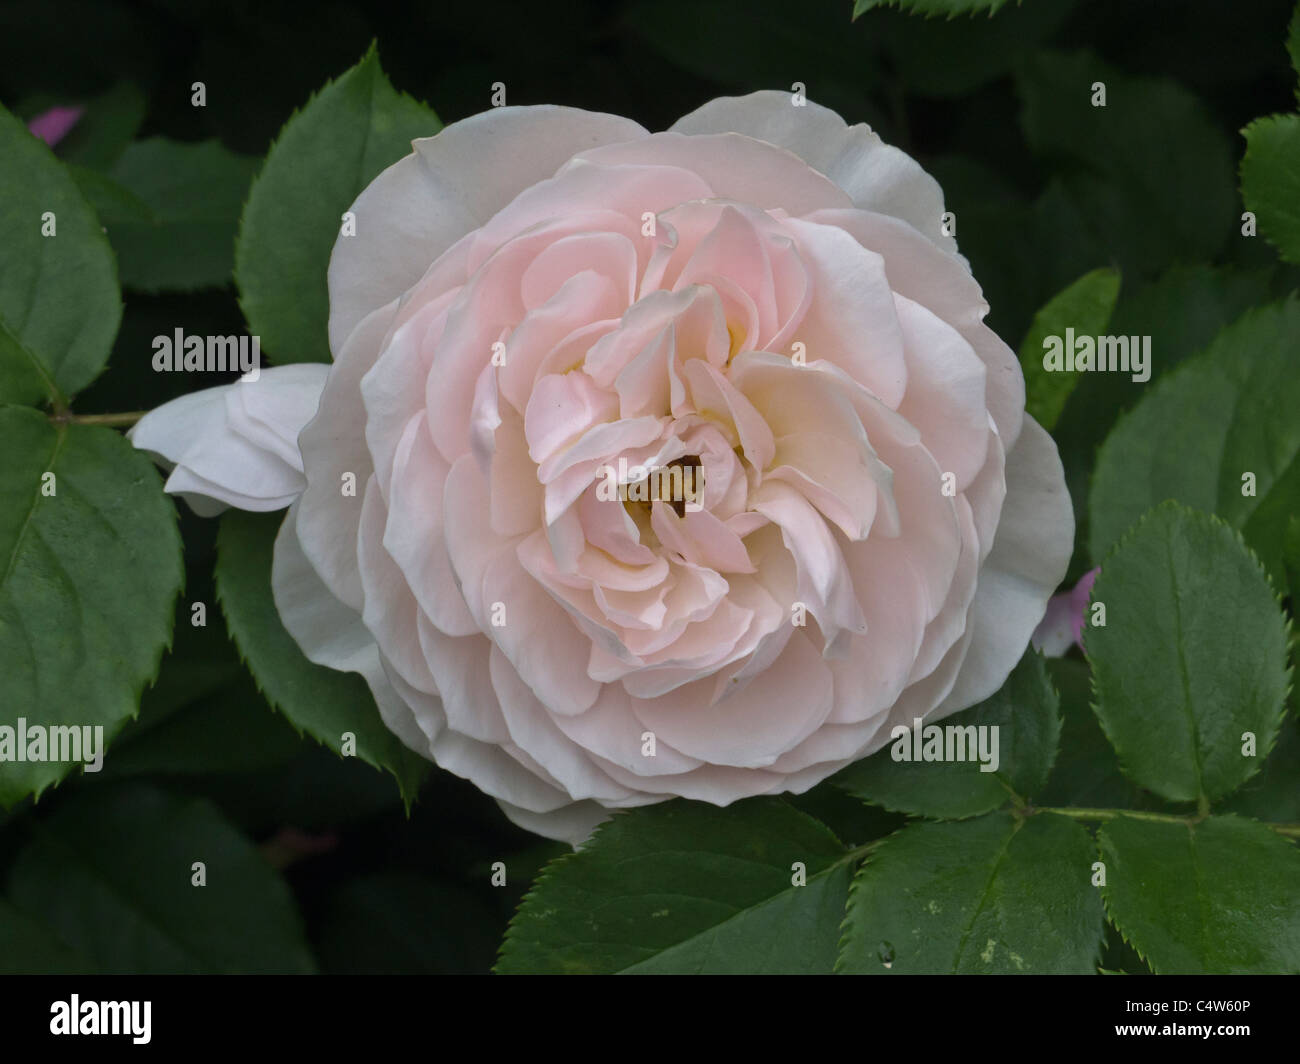 Giardini di Shakespeare a Central Park di New York City le rose rosa Foto Stock